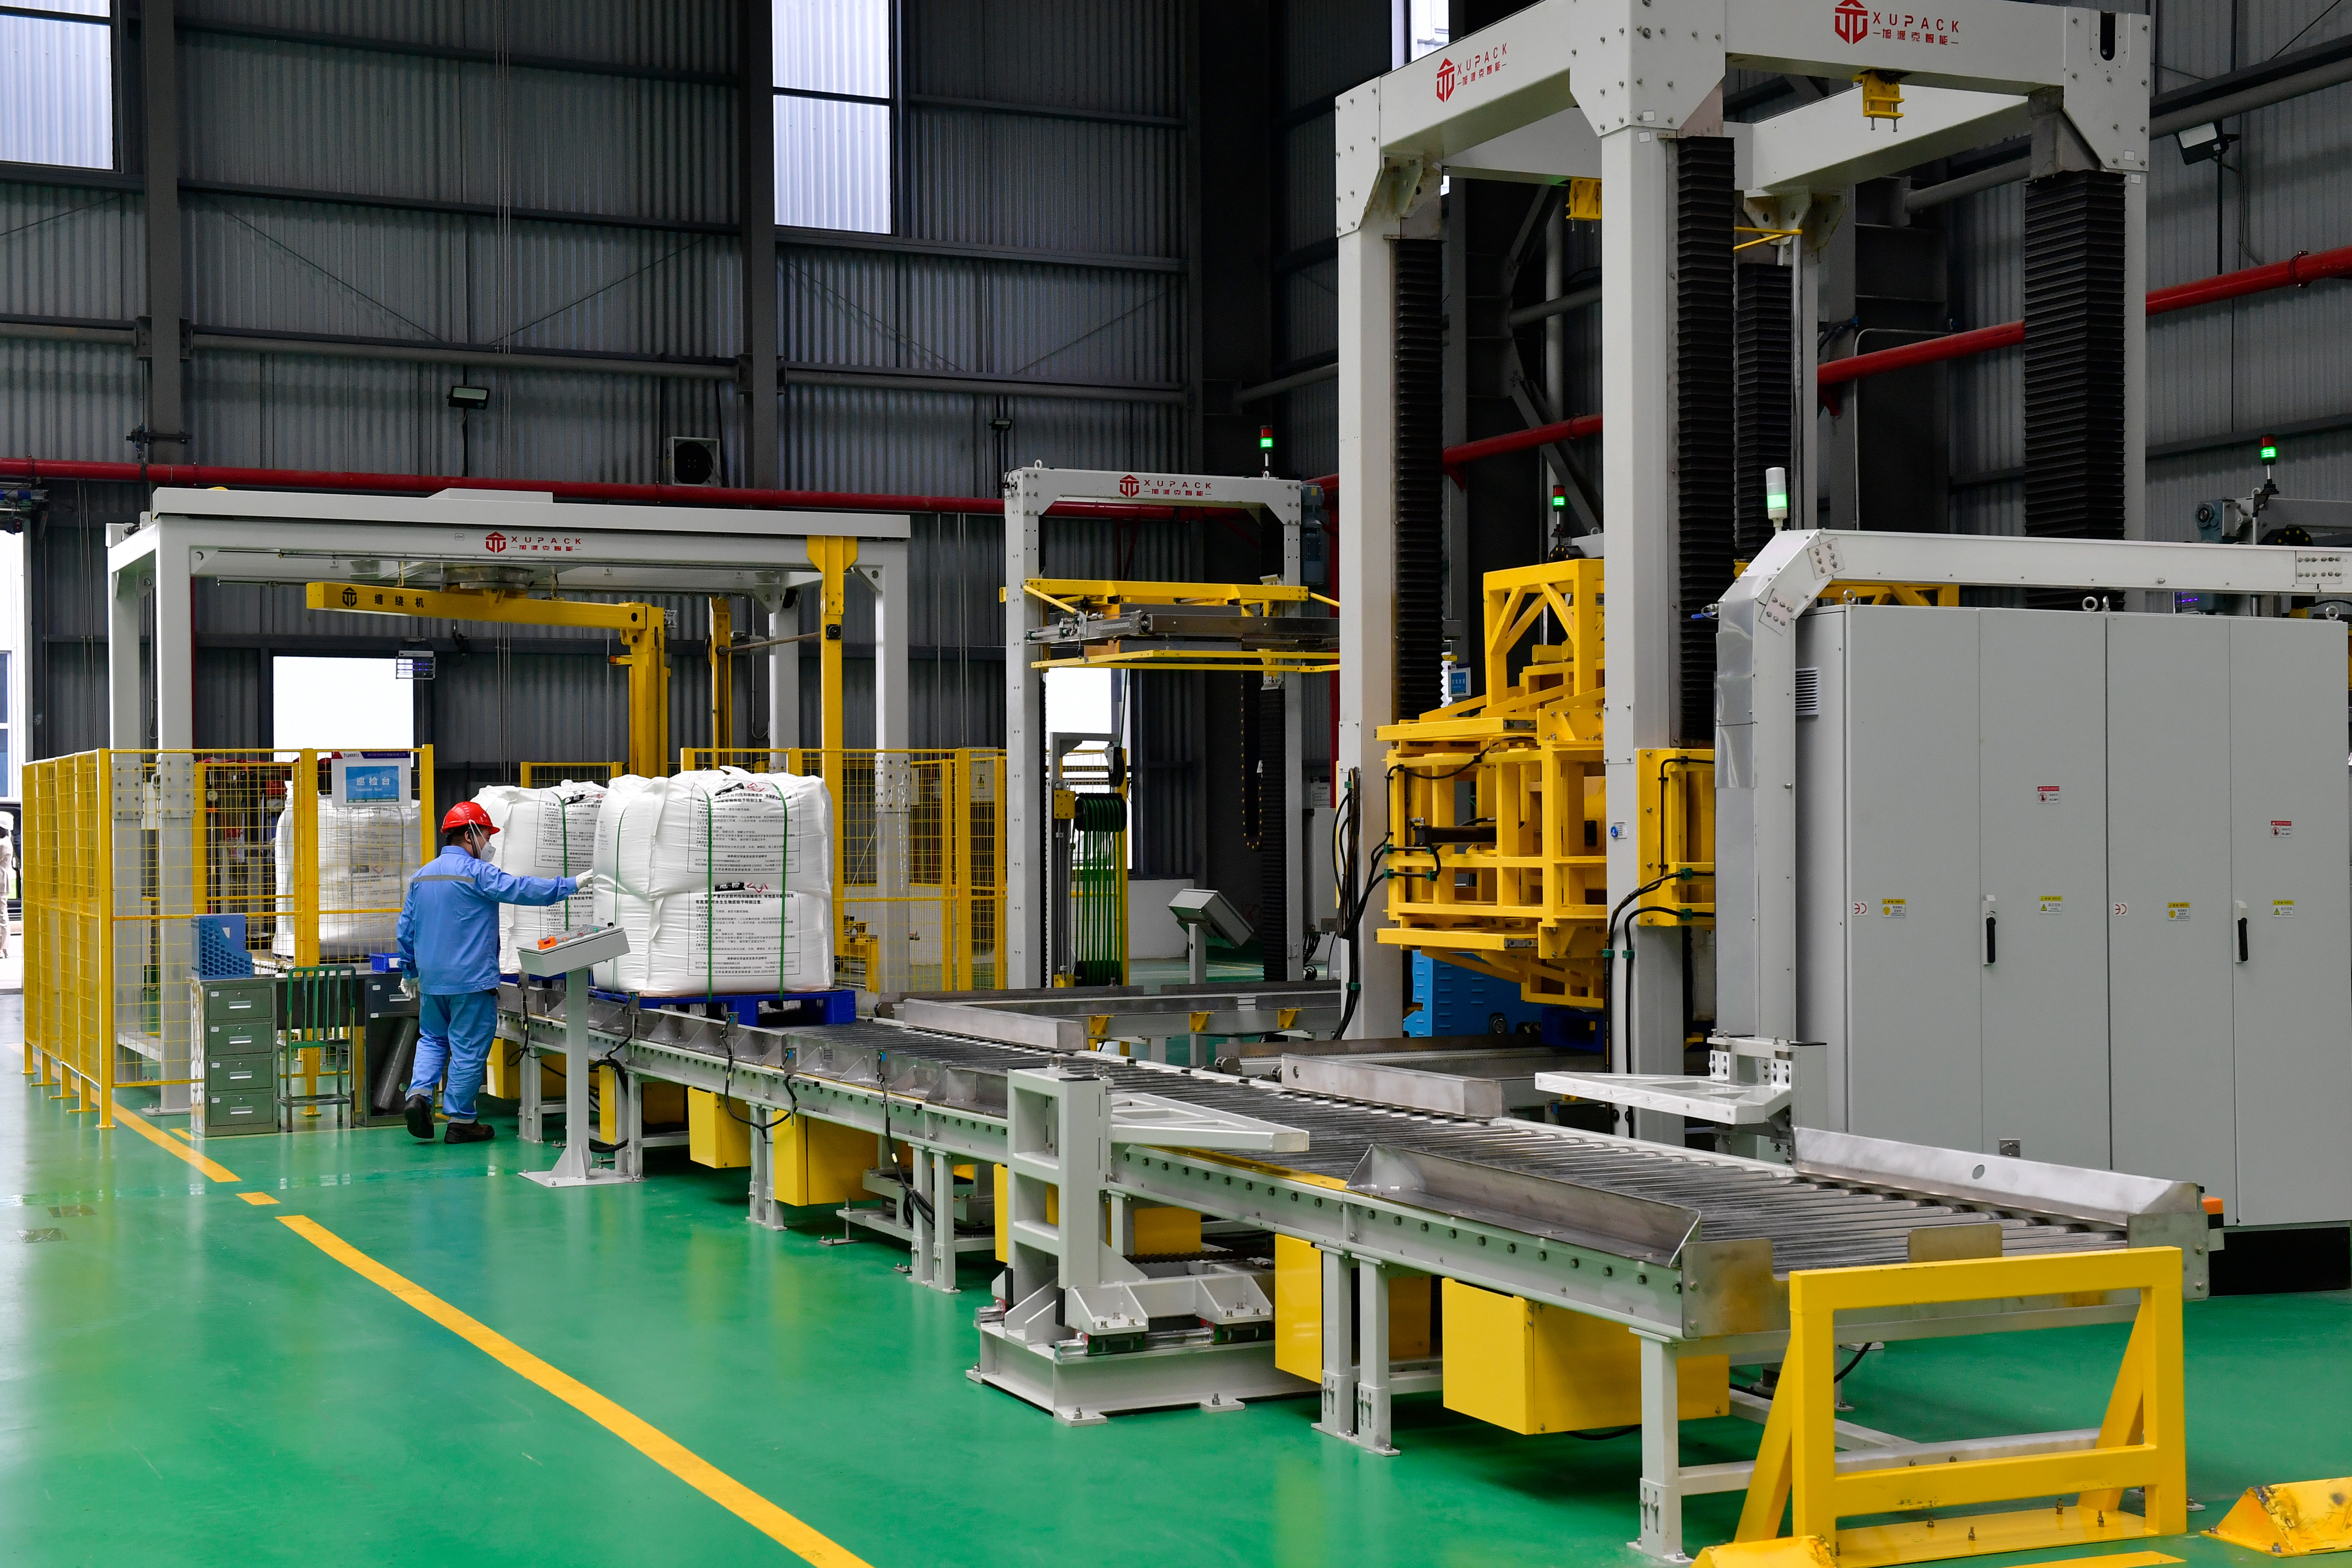 四川天华时代锂能有限公司生产车间。